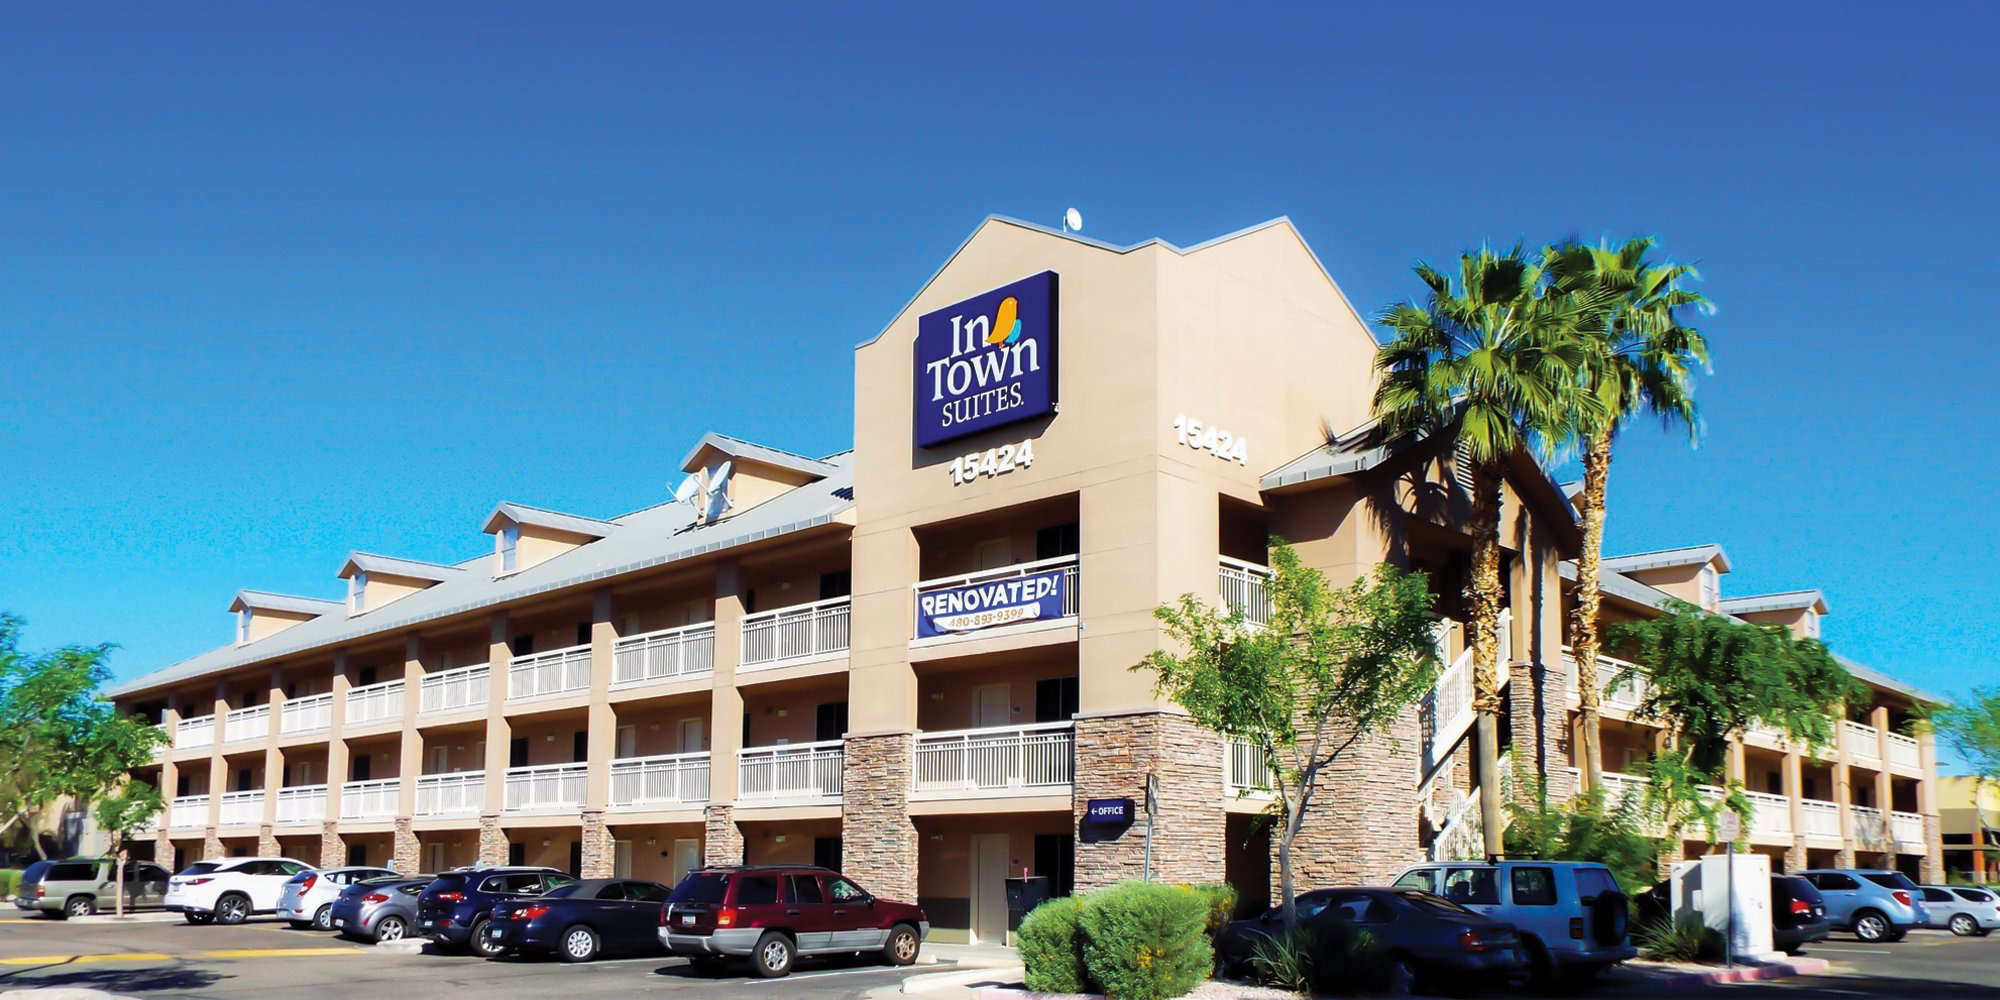 Photo of InTown Suites Phoenix South, Phoenix, AZ